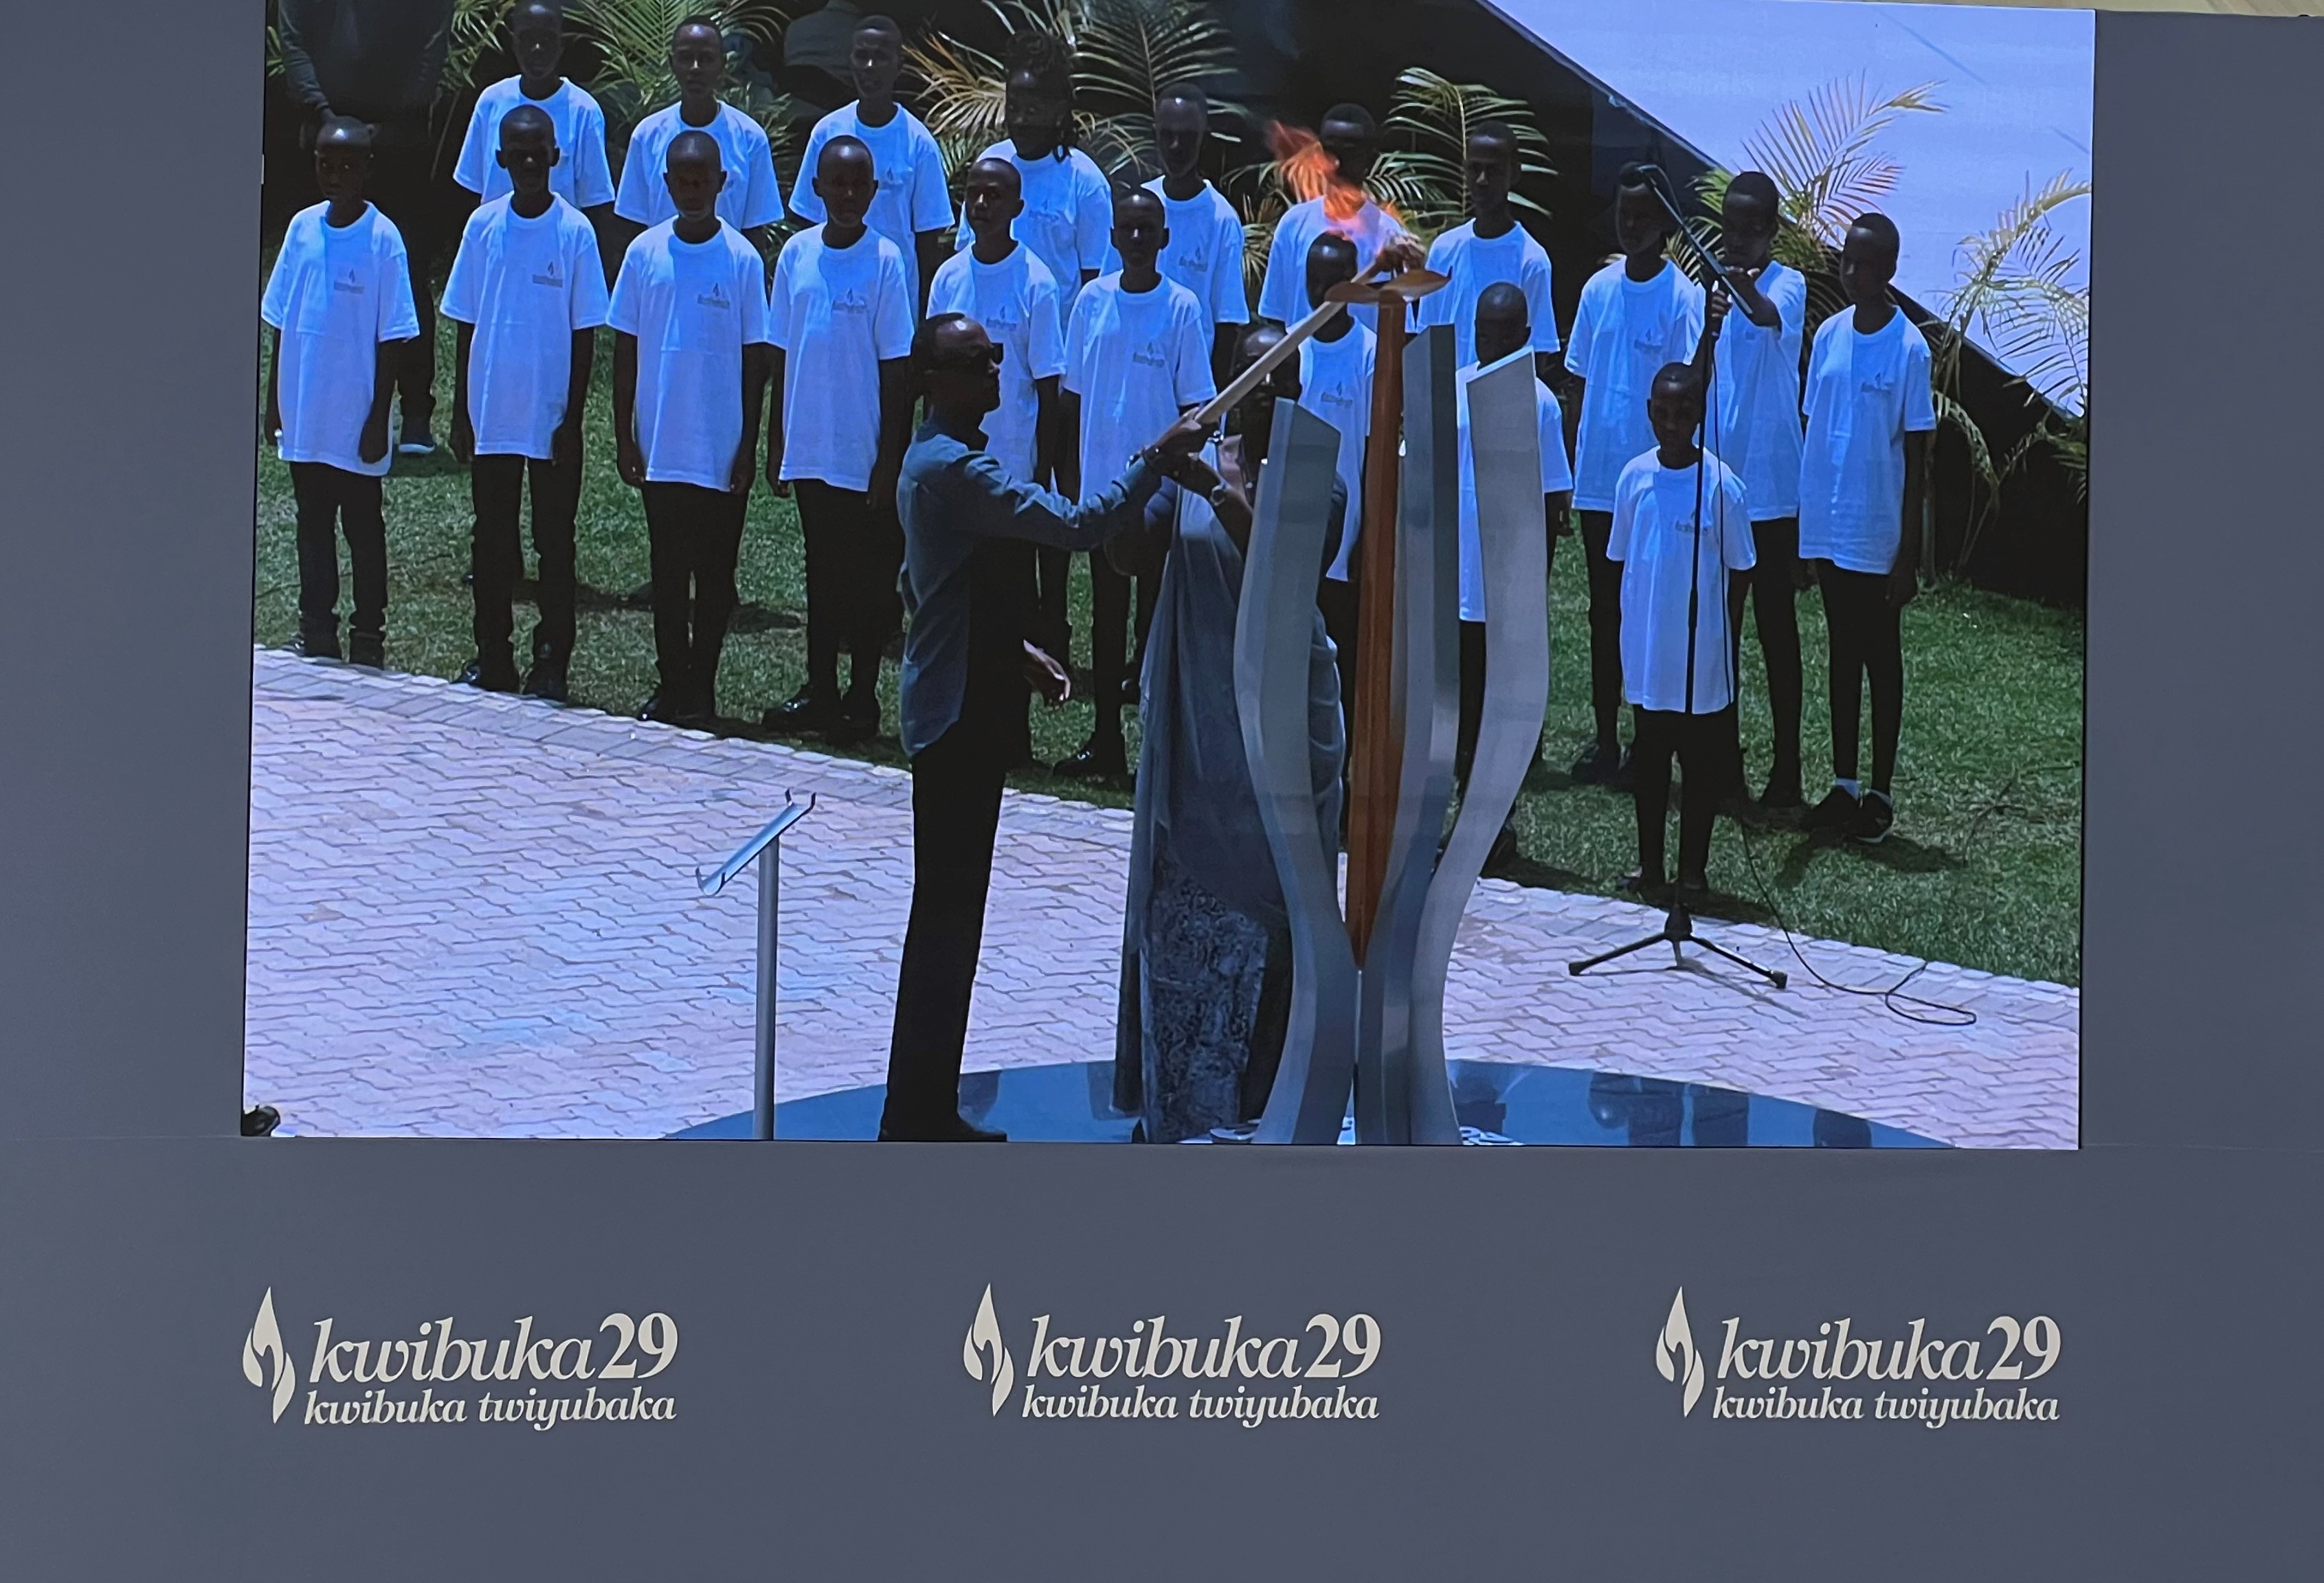 La Présidente Gatti Santana conclut sa visite officielle au Rwanda à l’occasion de Kwibuka29